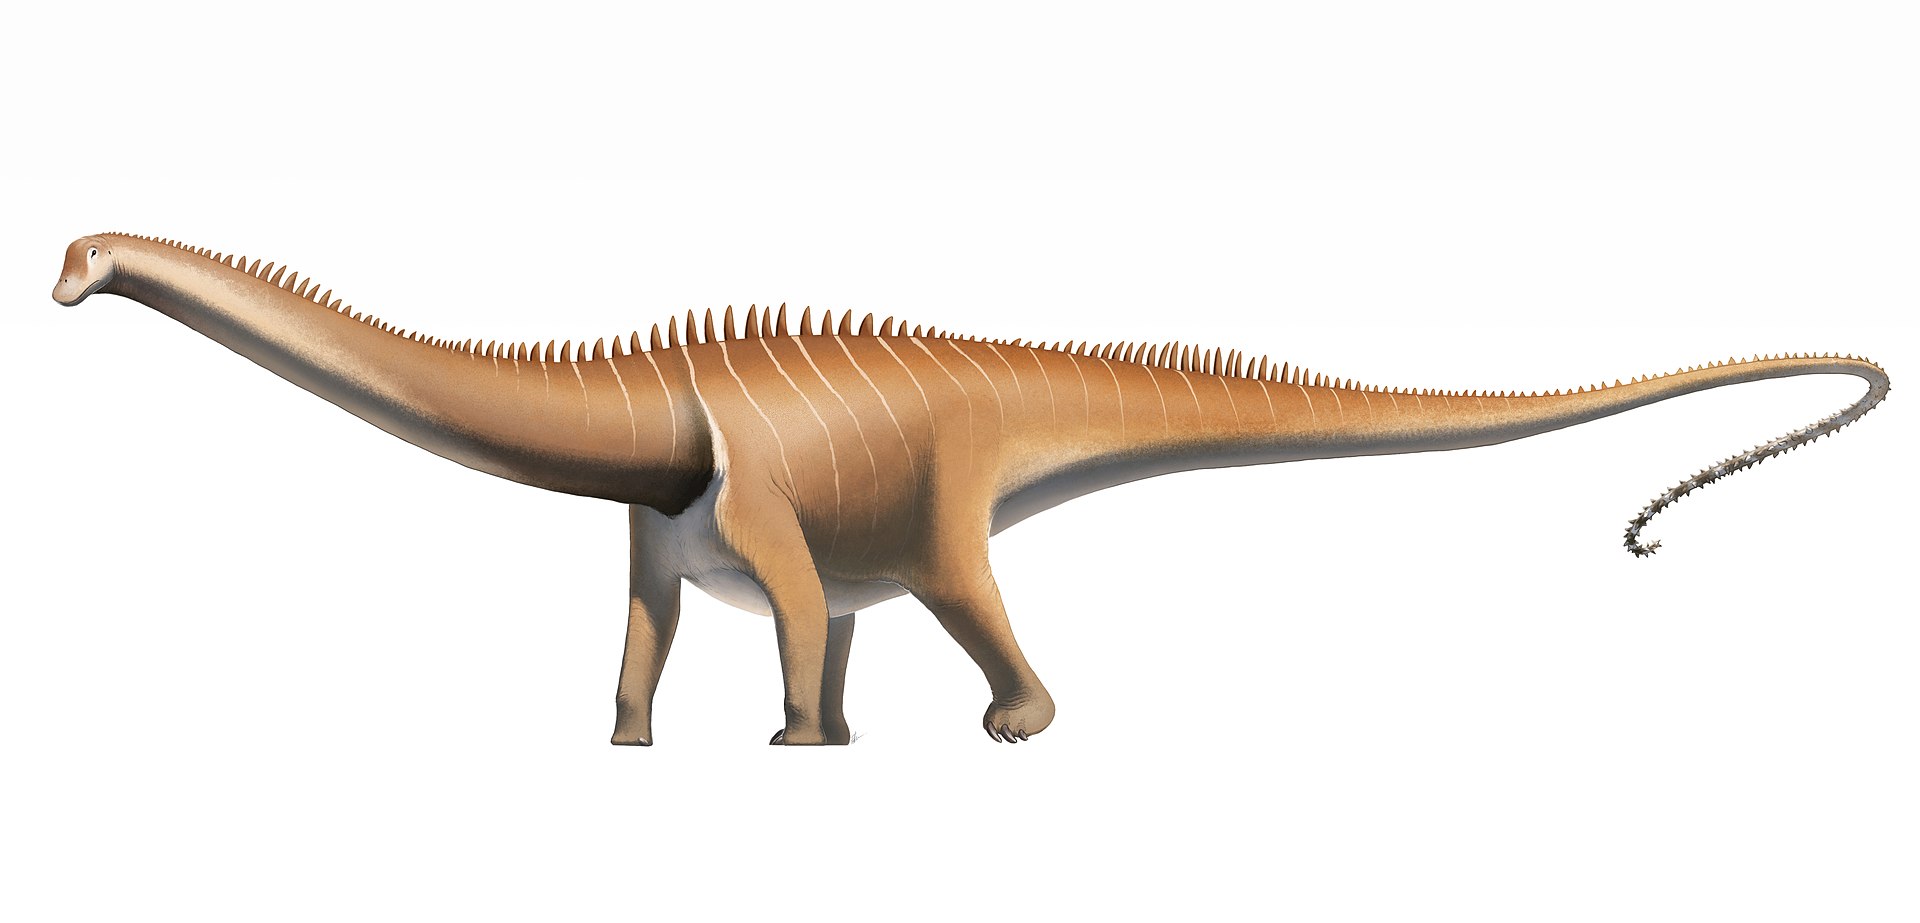 Moderní rekonstrukce vzezeření druhu Diplodocus carnegii s horizontálně neseným ocasem, vzpřímeným postojem a dynamickým držením těla. Diplodokové žili v období pozdní jury (asi před 154 až 152 miliony let) na území západu Severní Ameriky a patřili k